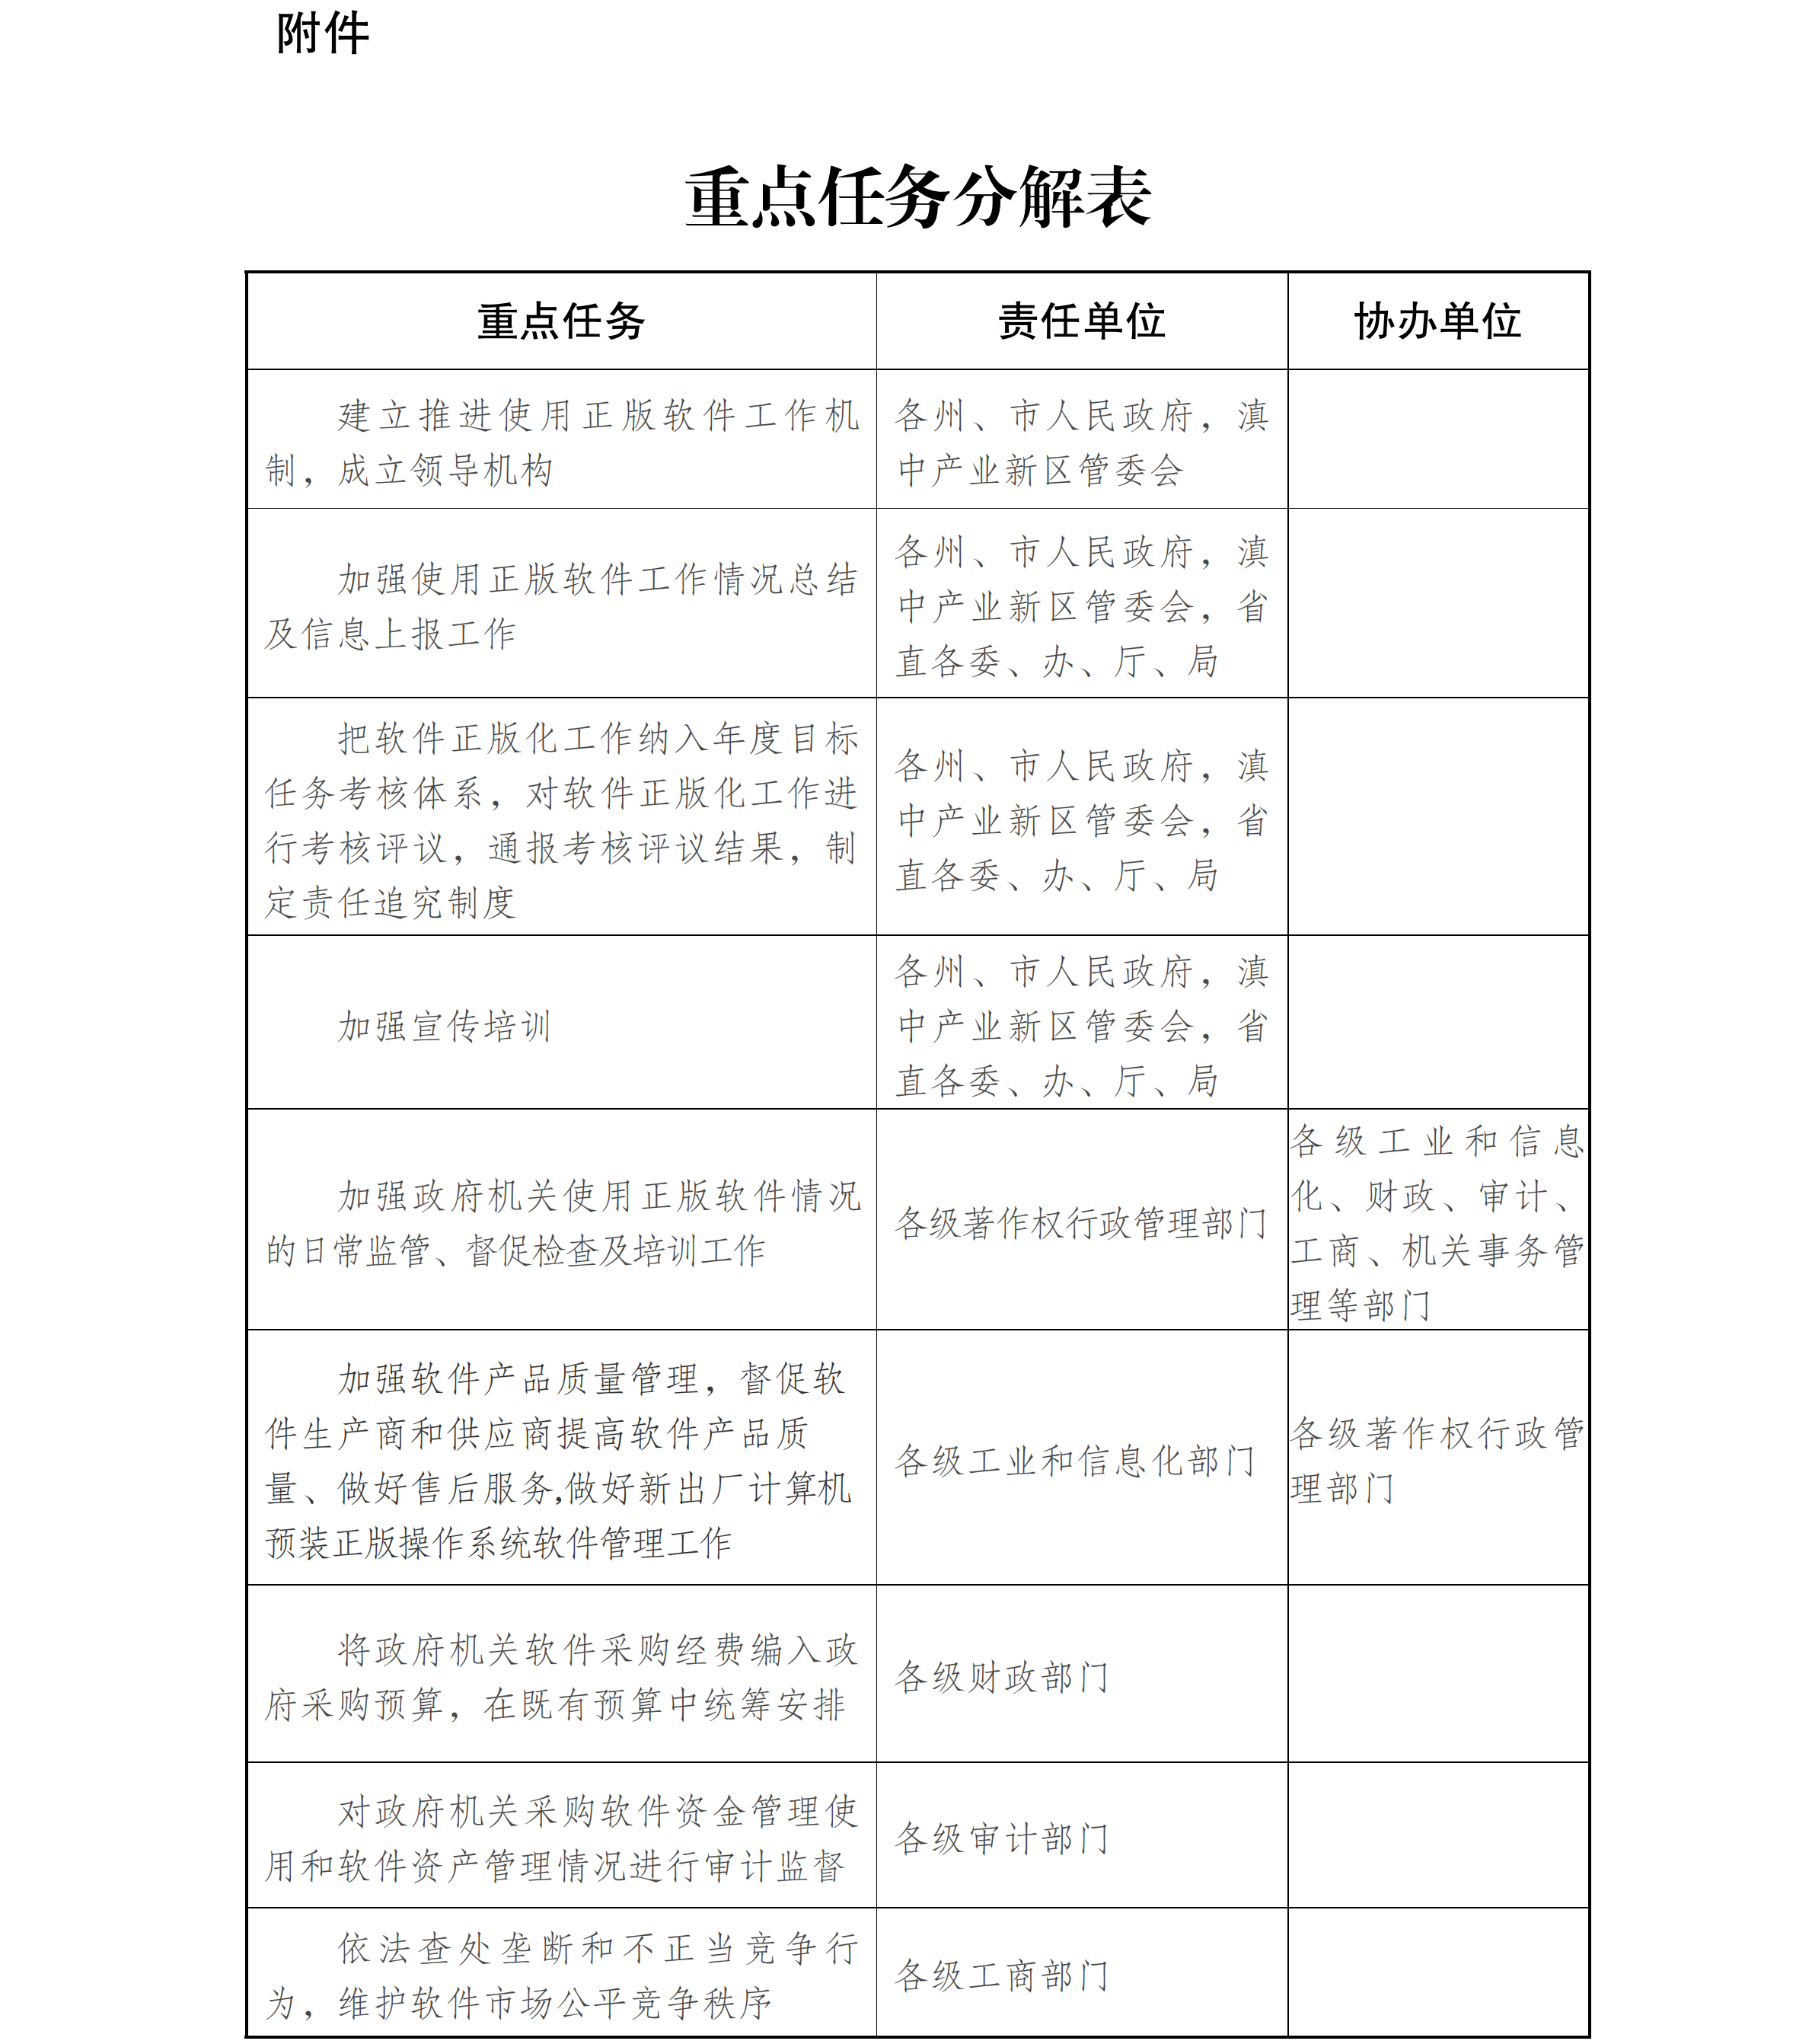 云南省人民政府办公厅关于政府机关使用正版软件的实施意见_06.png